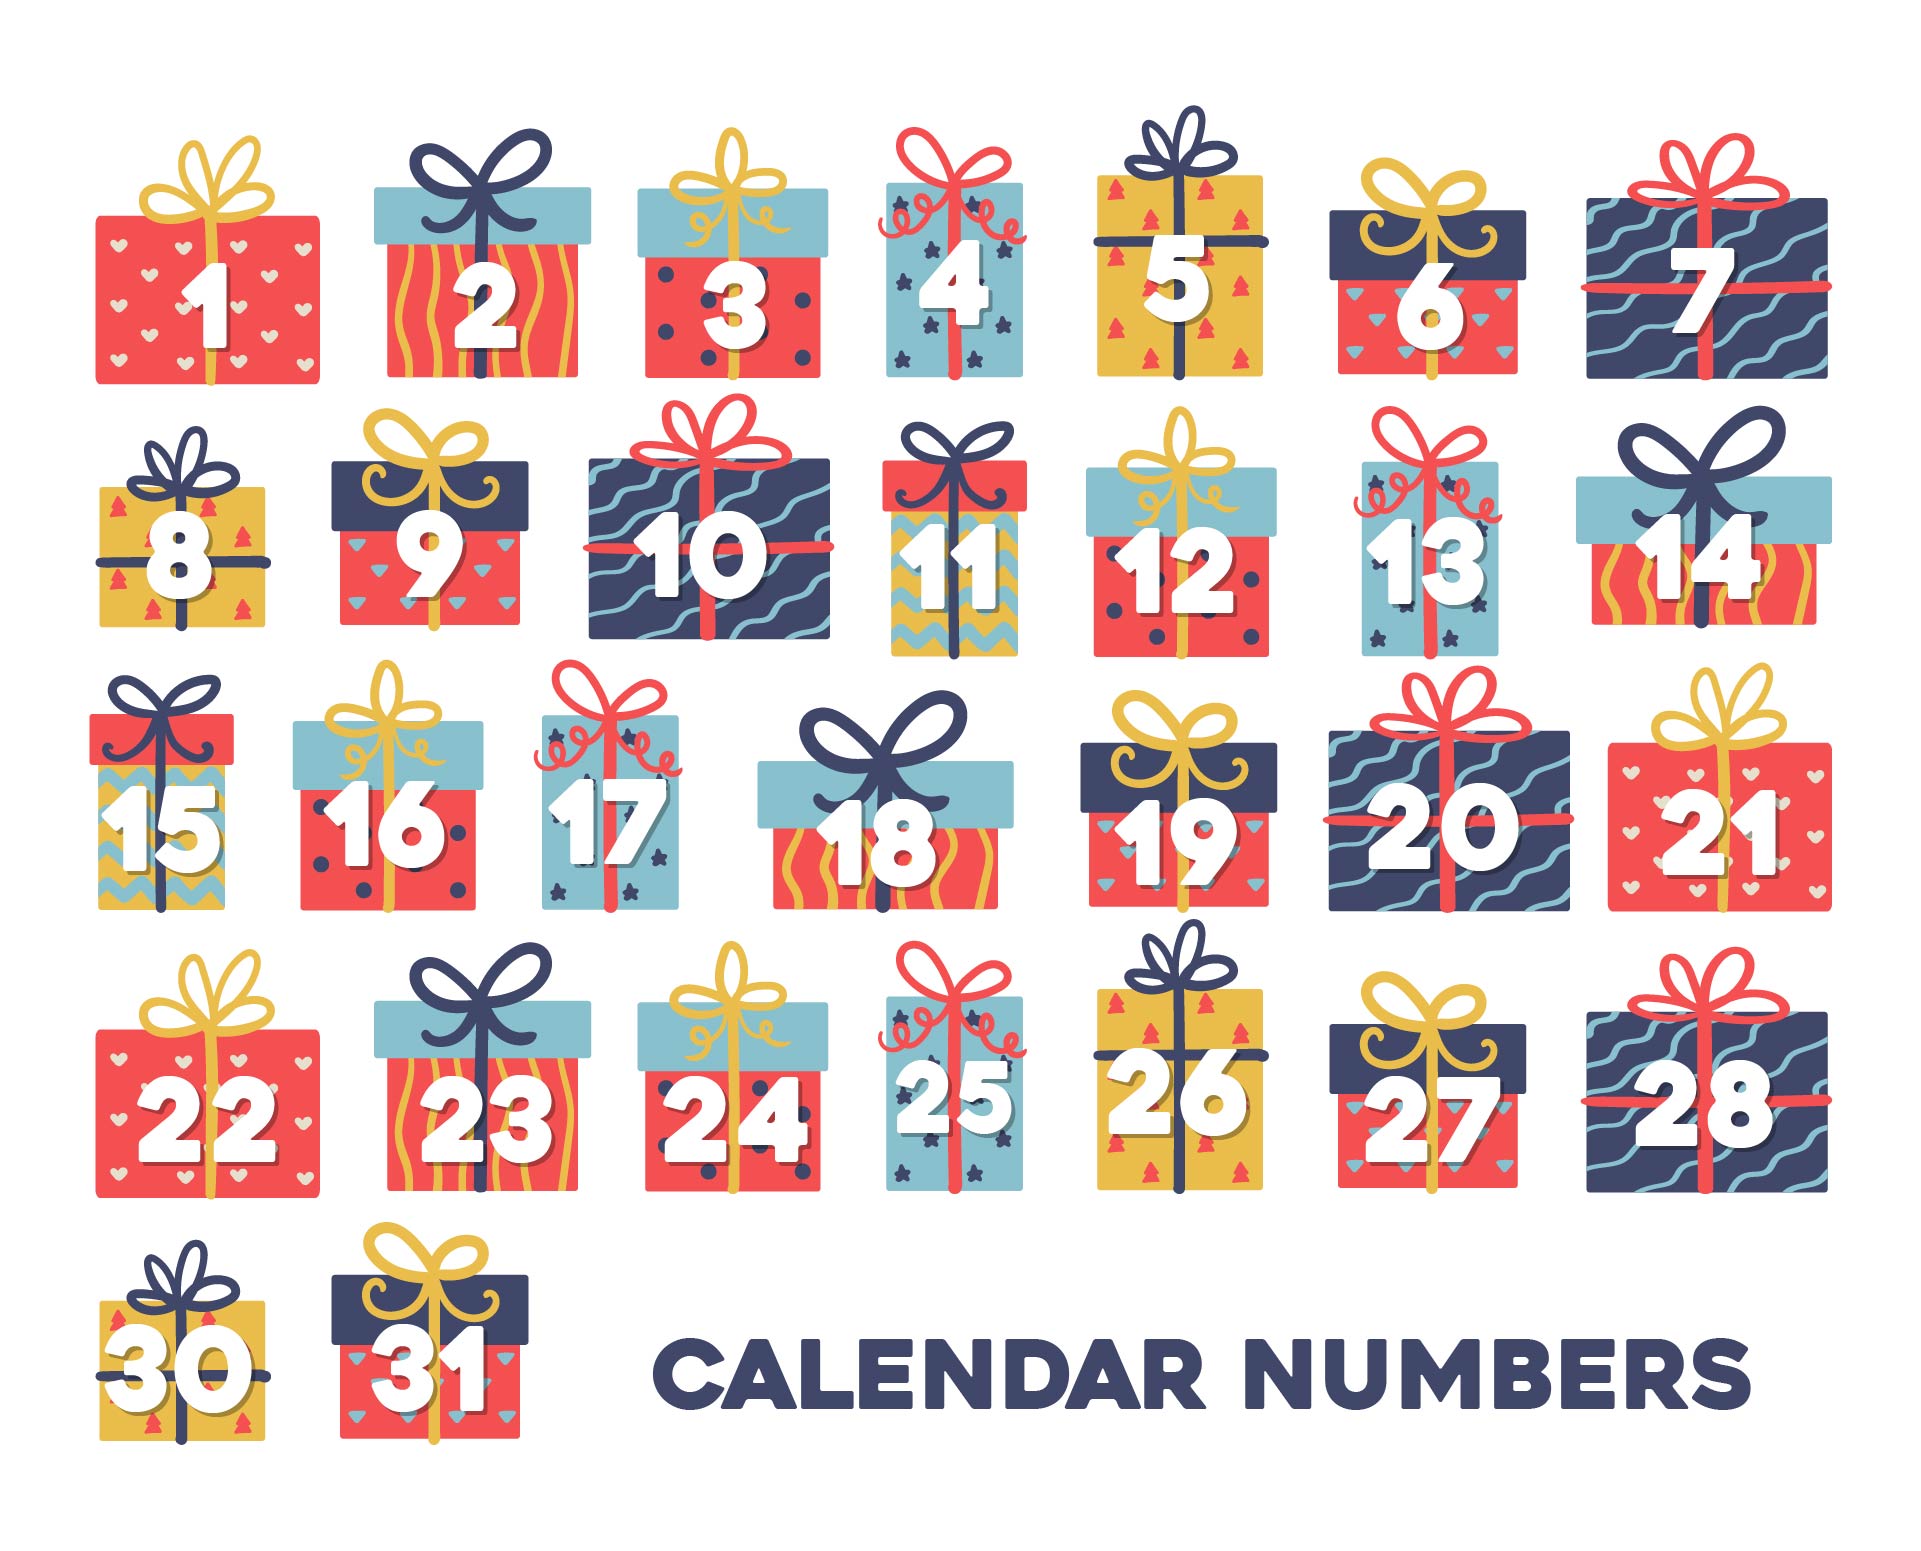 Printable Calendar Numbers